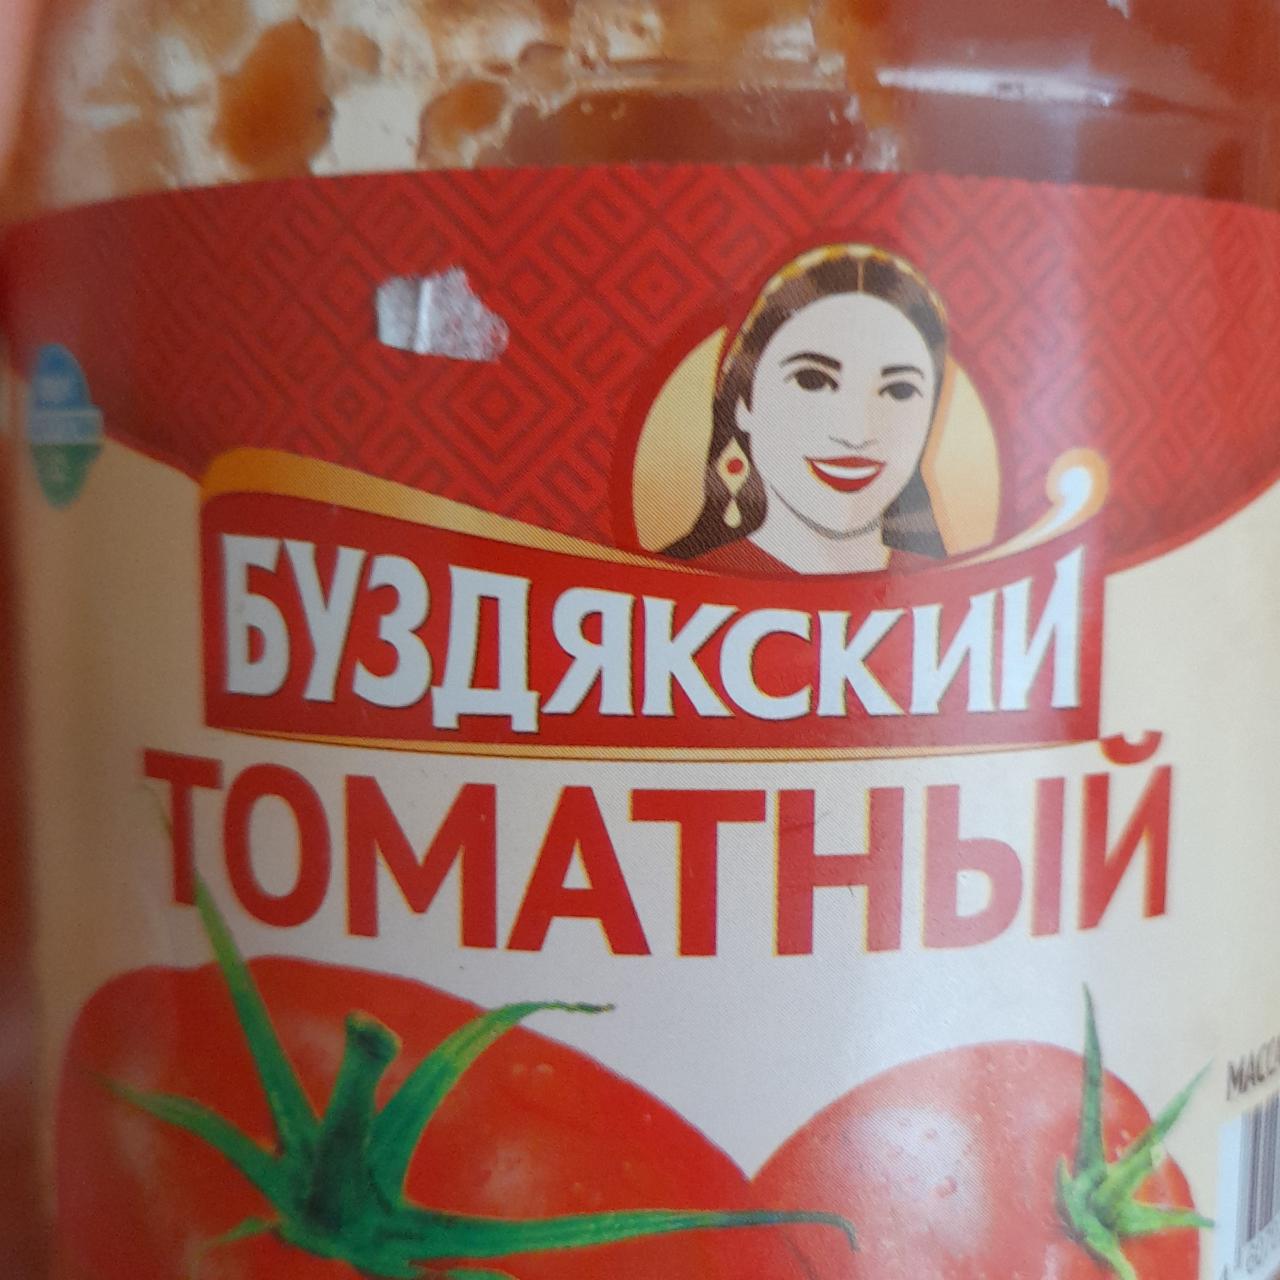 Фото - Сок томатный Буздякский